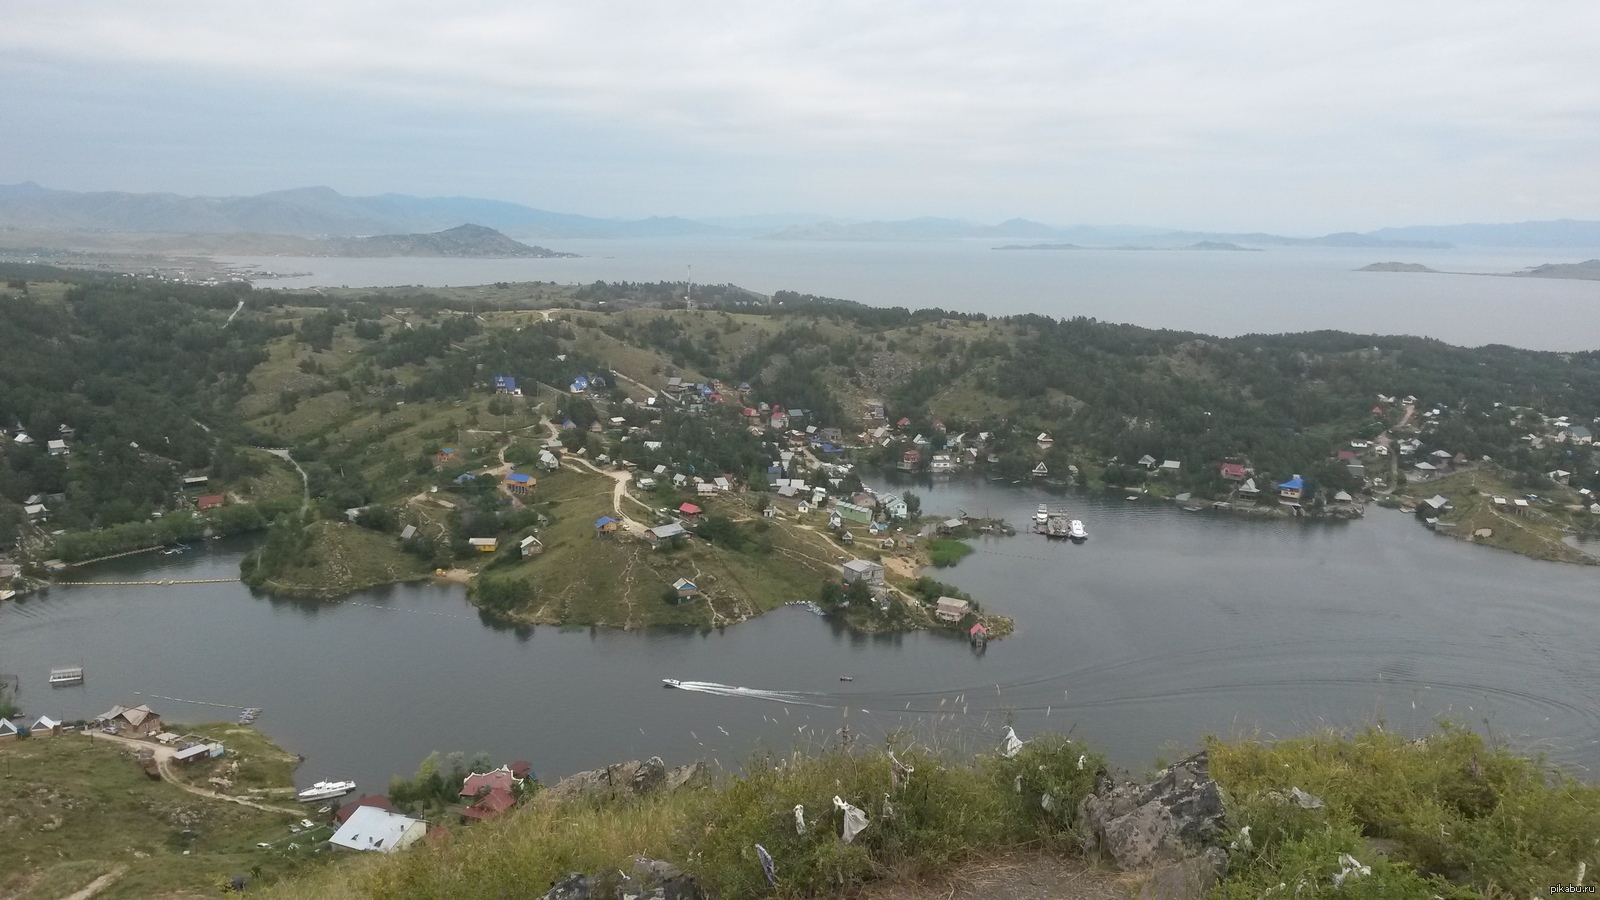 Бухтарминское озеро